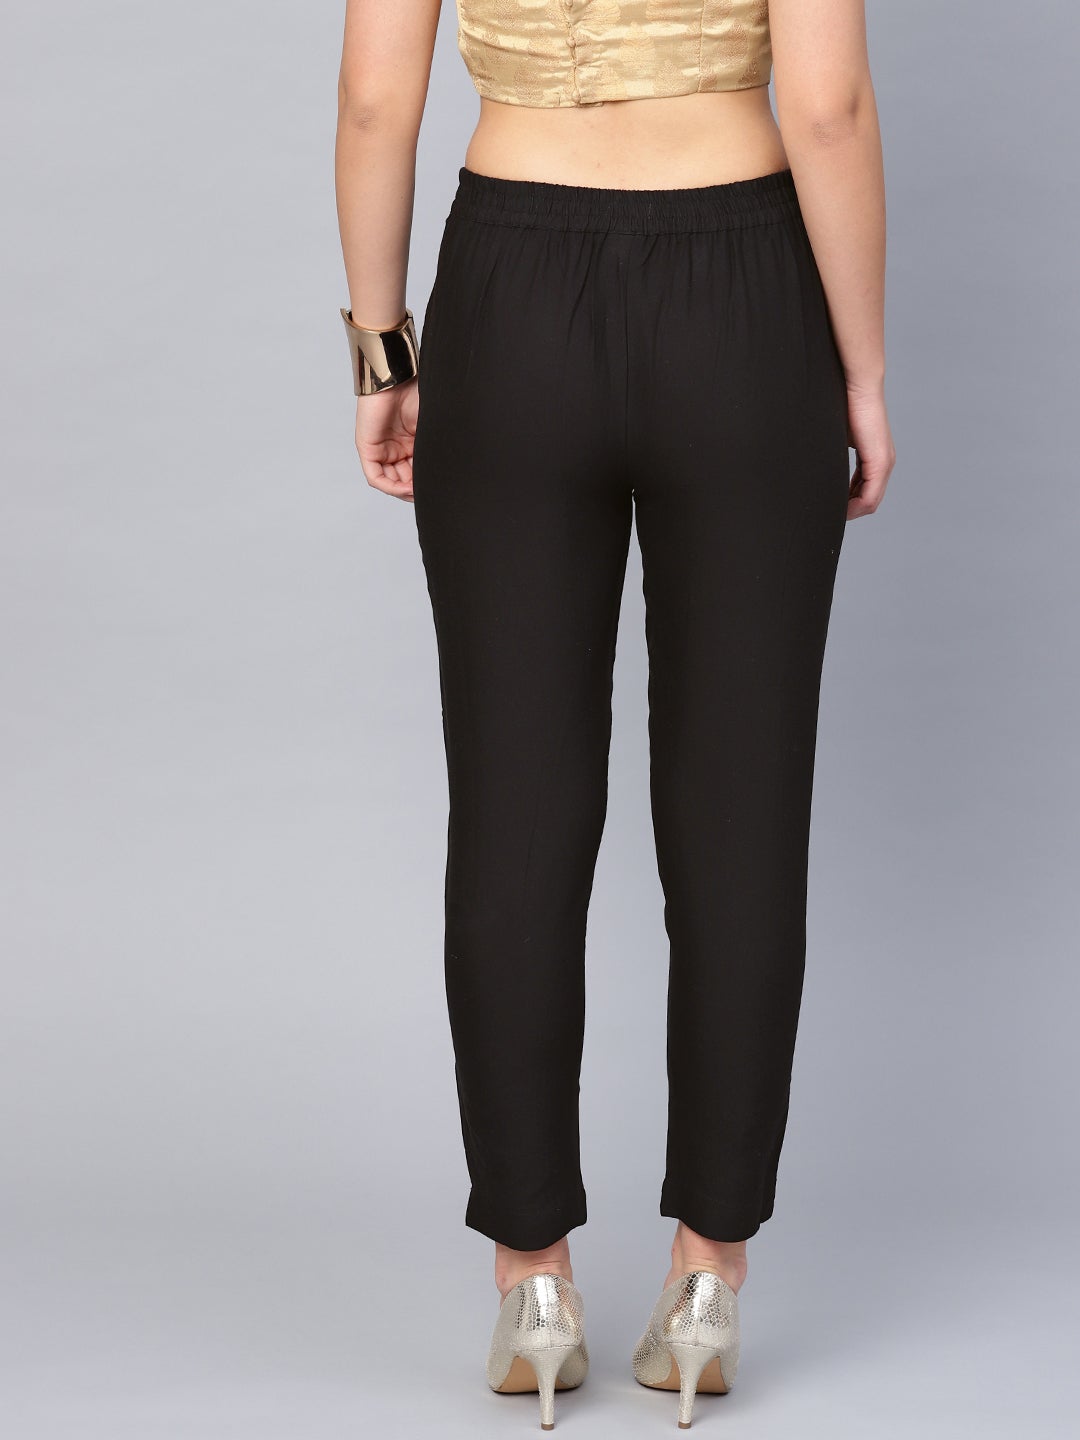 Black Cotton Flex Solid Slim Fit Pant/Slim Pant